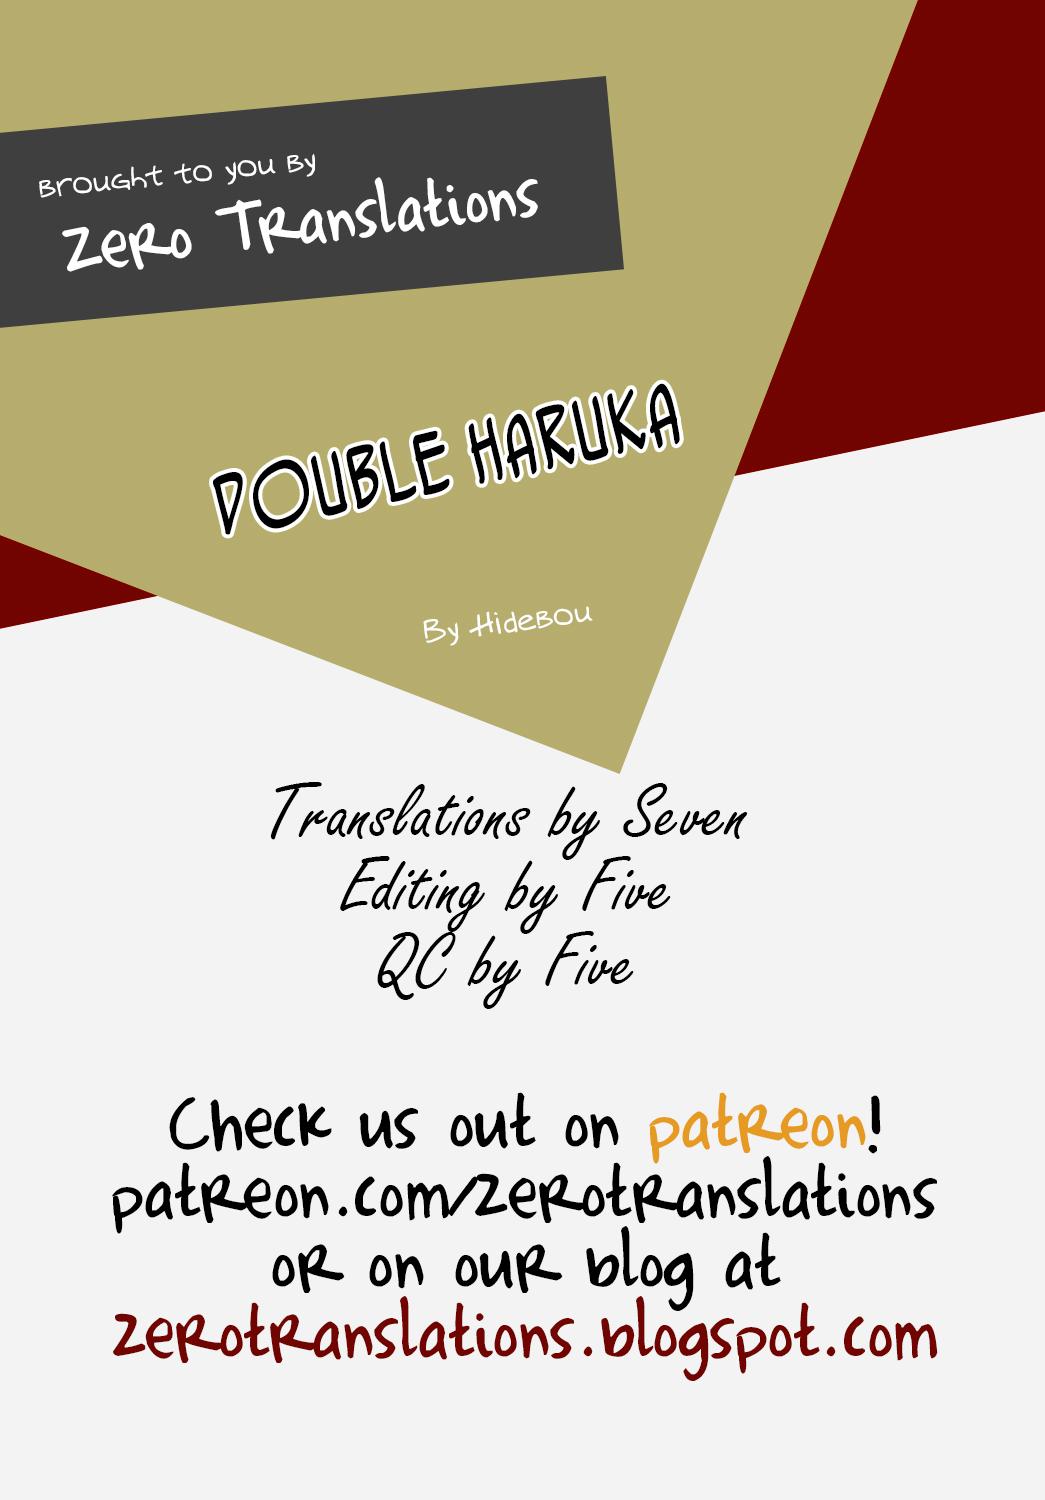 Double Haruka Returns! 24